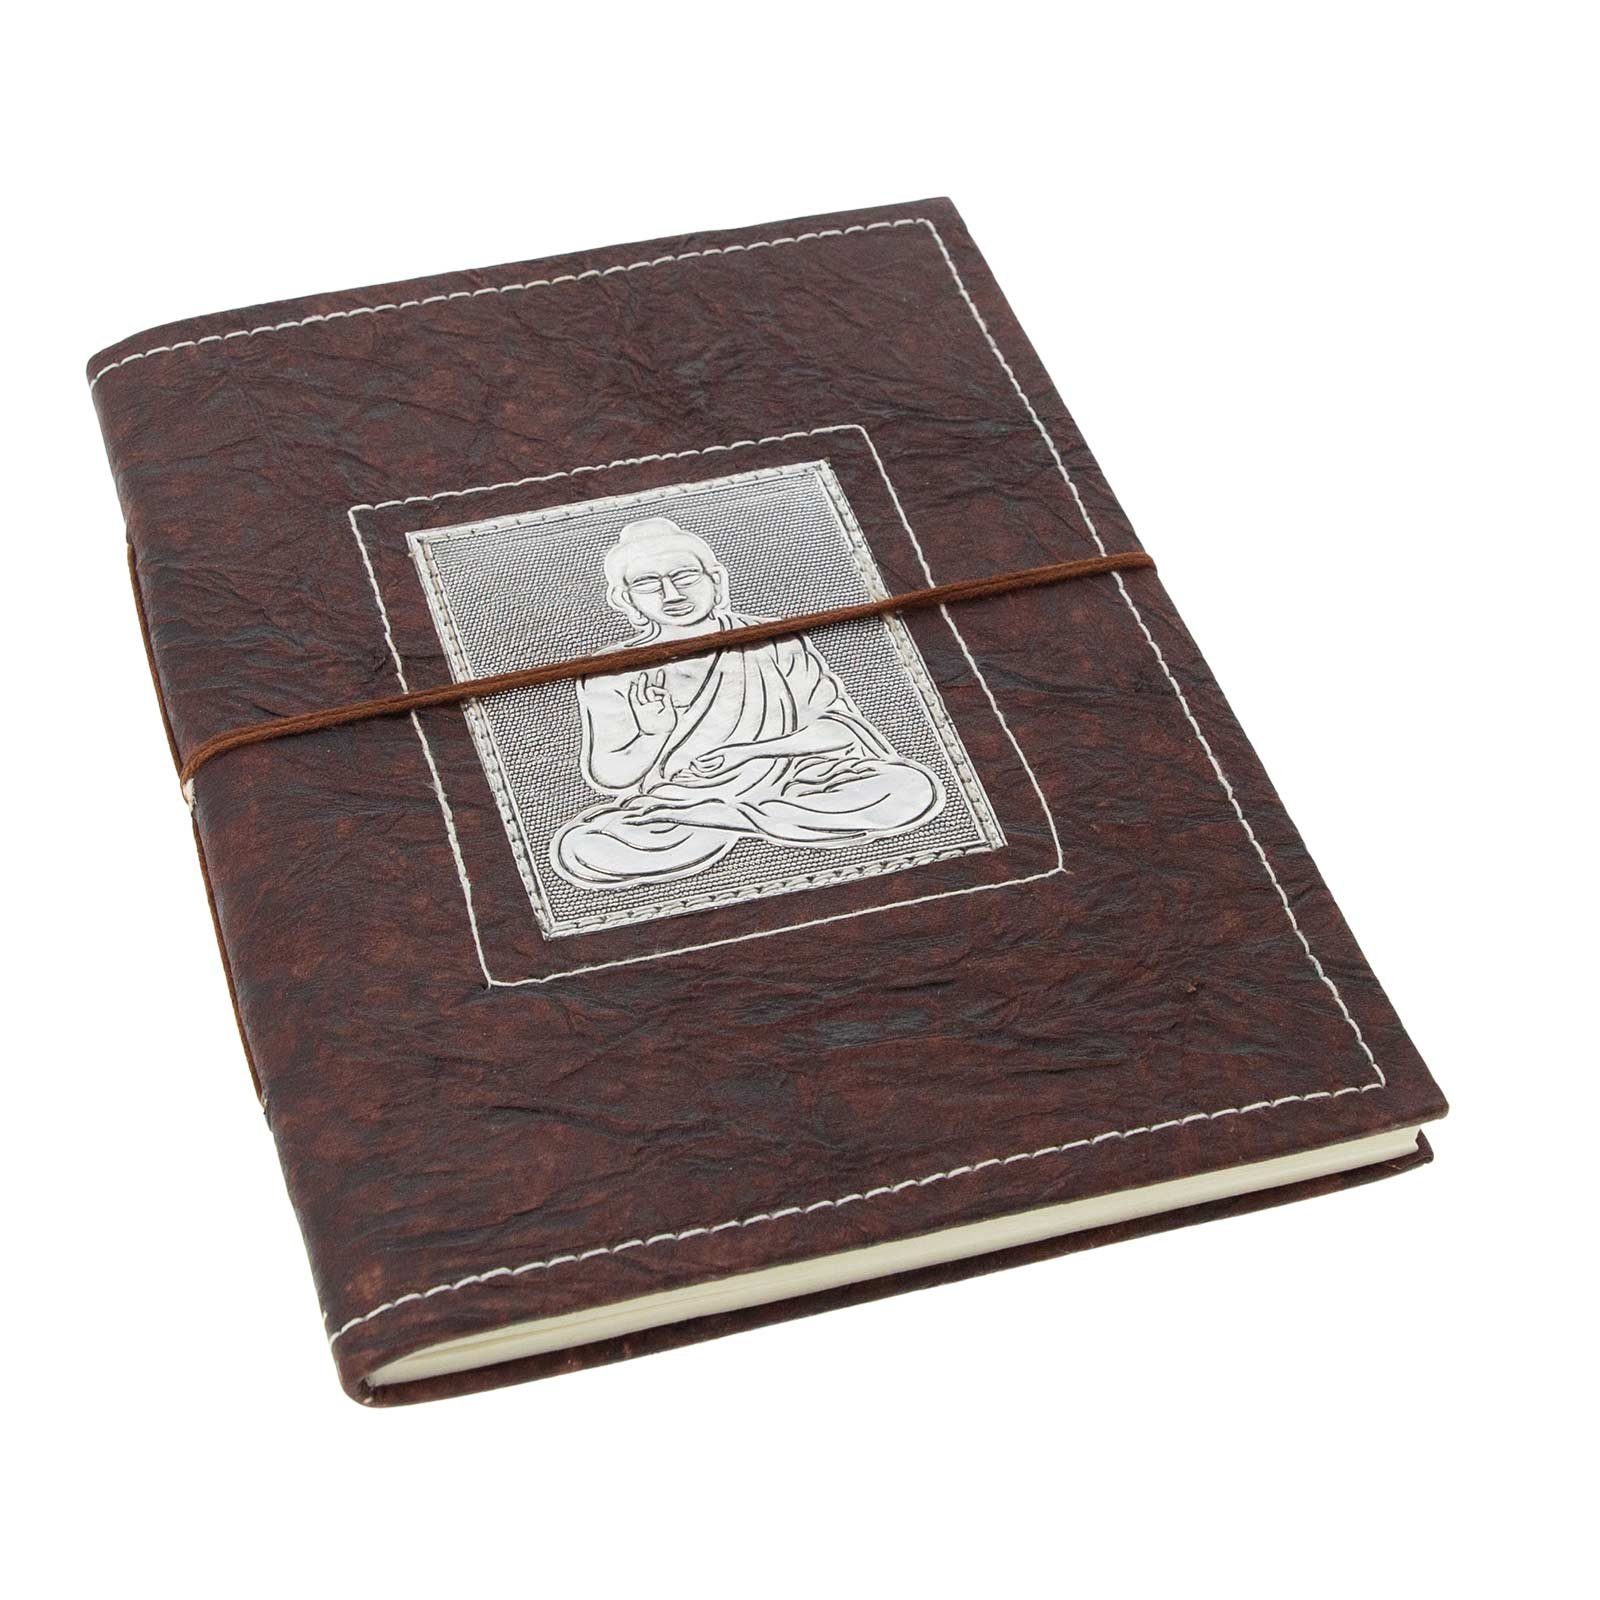 KUNST UND Buddha XL handgefertigt Poesiealbum Notizbuch Tagebuch MAGIE Tagebuch 25x18cm